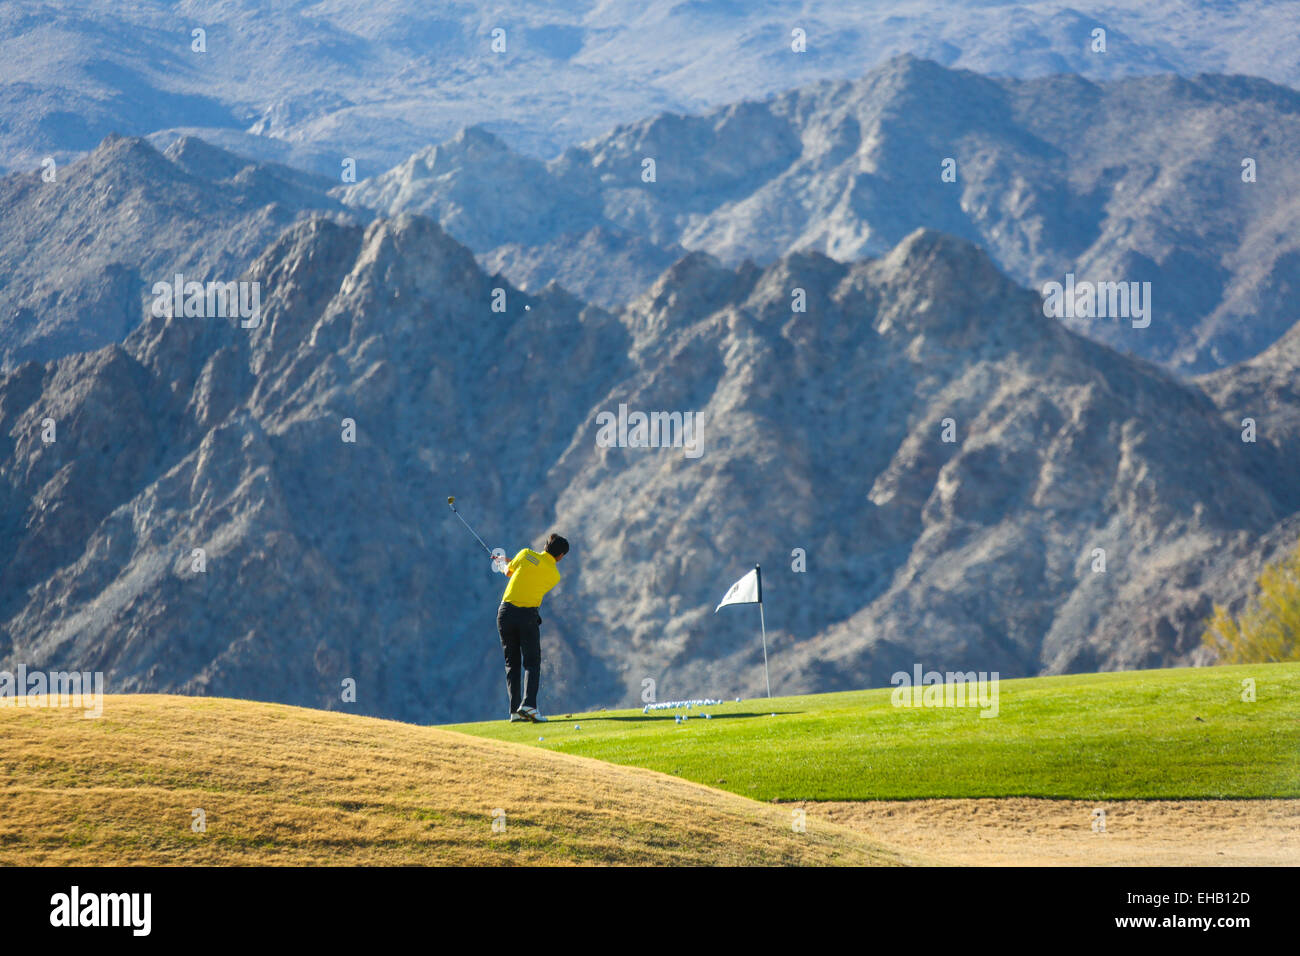 Un homme sur le terrain de golf pour jouer Banque D'Images